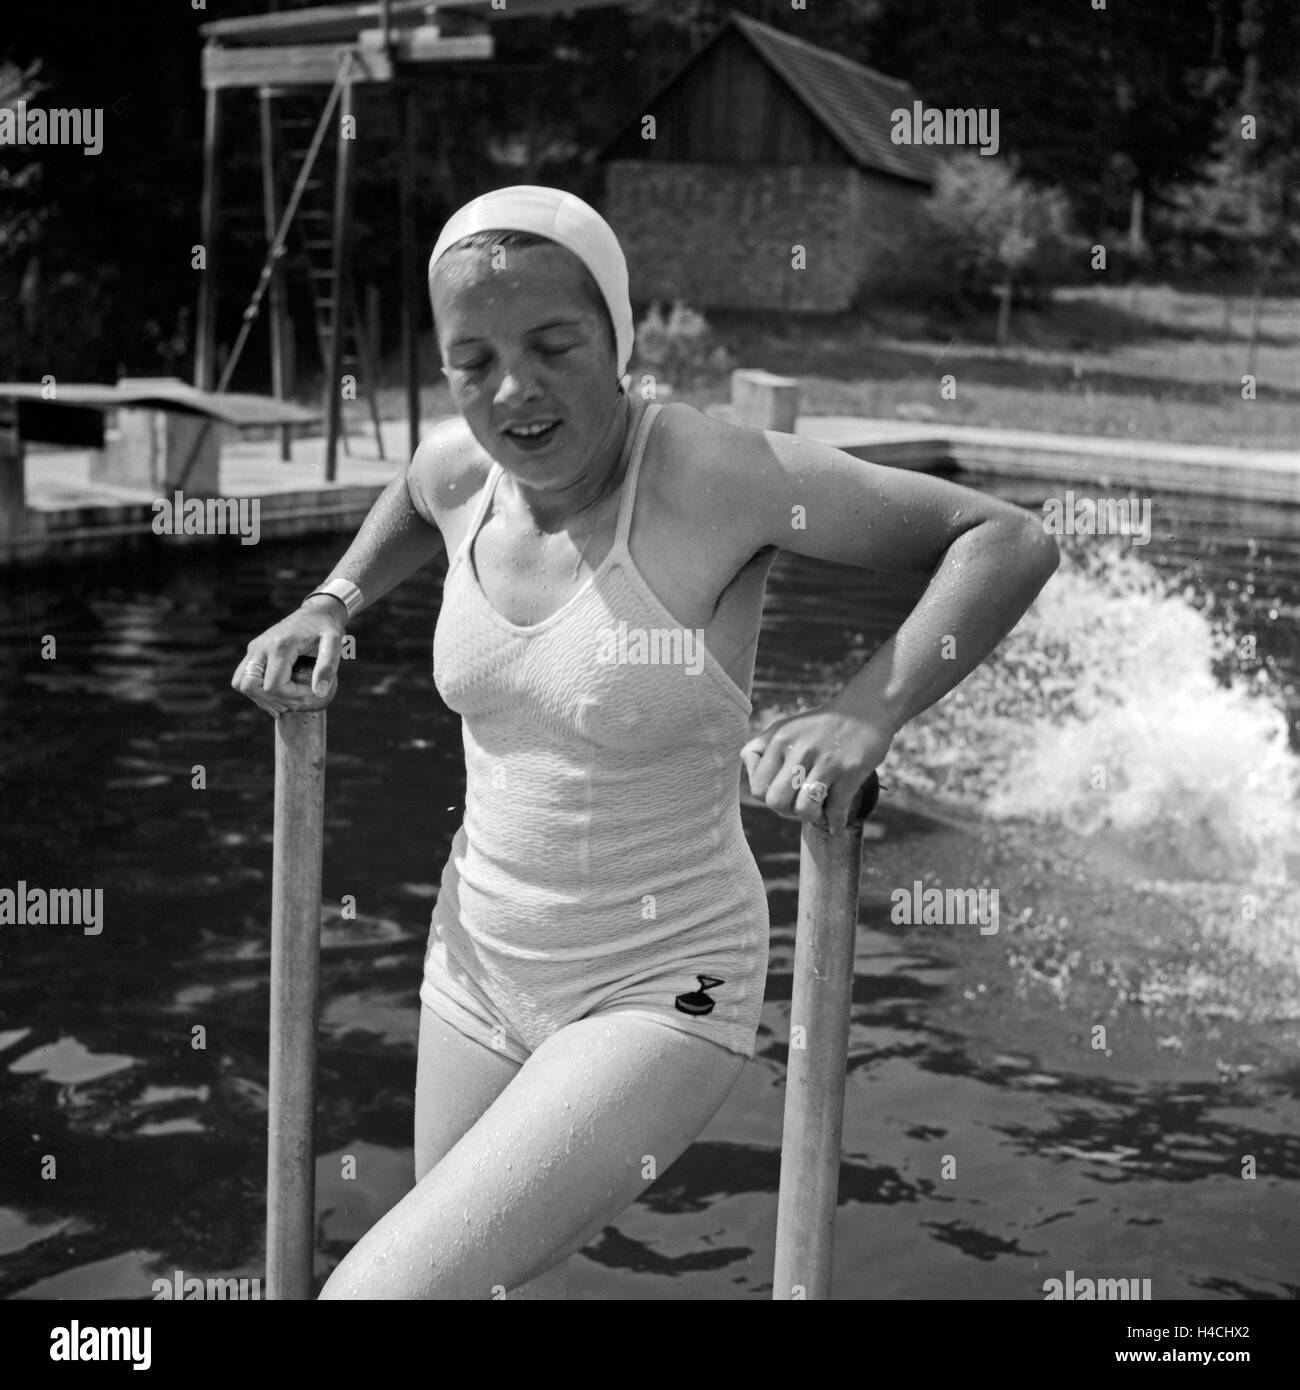 Eine junge Frau kommt nach einem molleggiante ins Wasser wieder aus dem Becken, Deutschland 1930er Jahre. Dopo un jumo in piscina una donna arrampicata fuori dall'acqua, Germania 1930s. Foto Stock